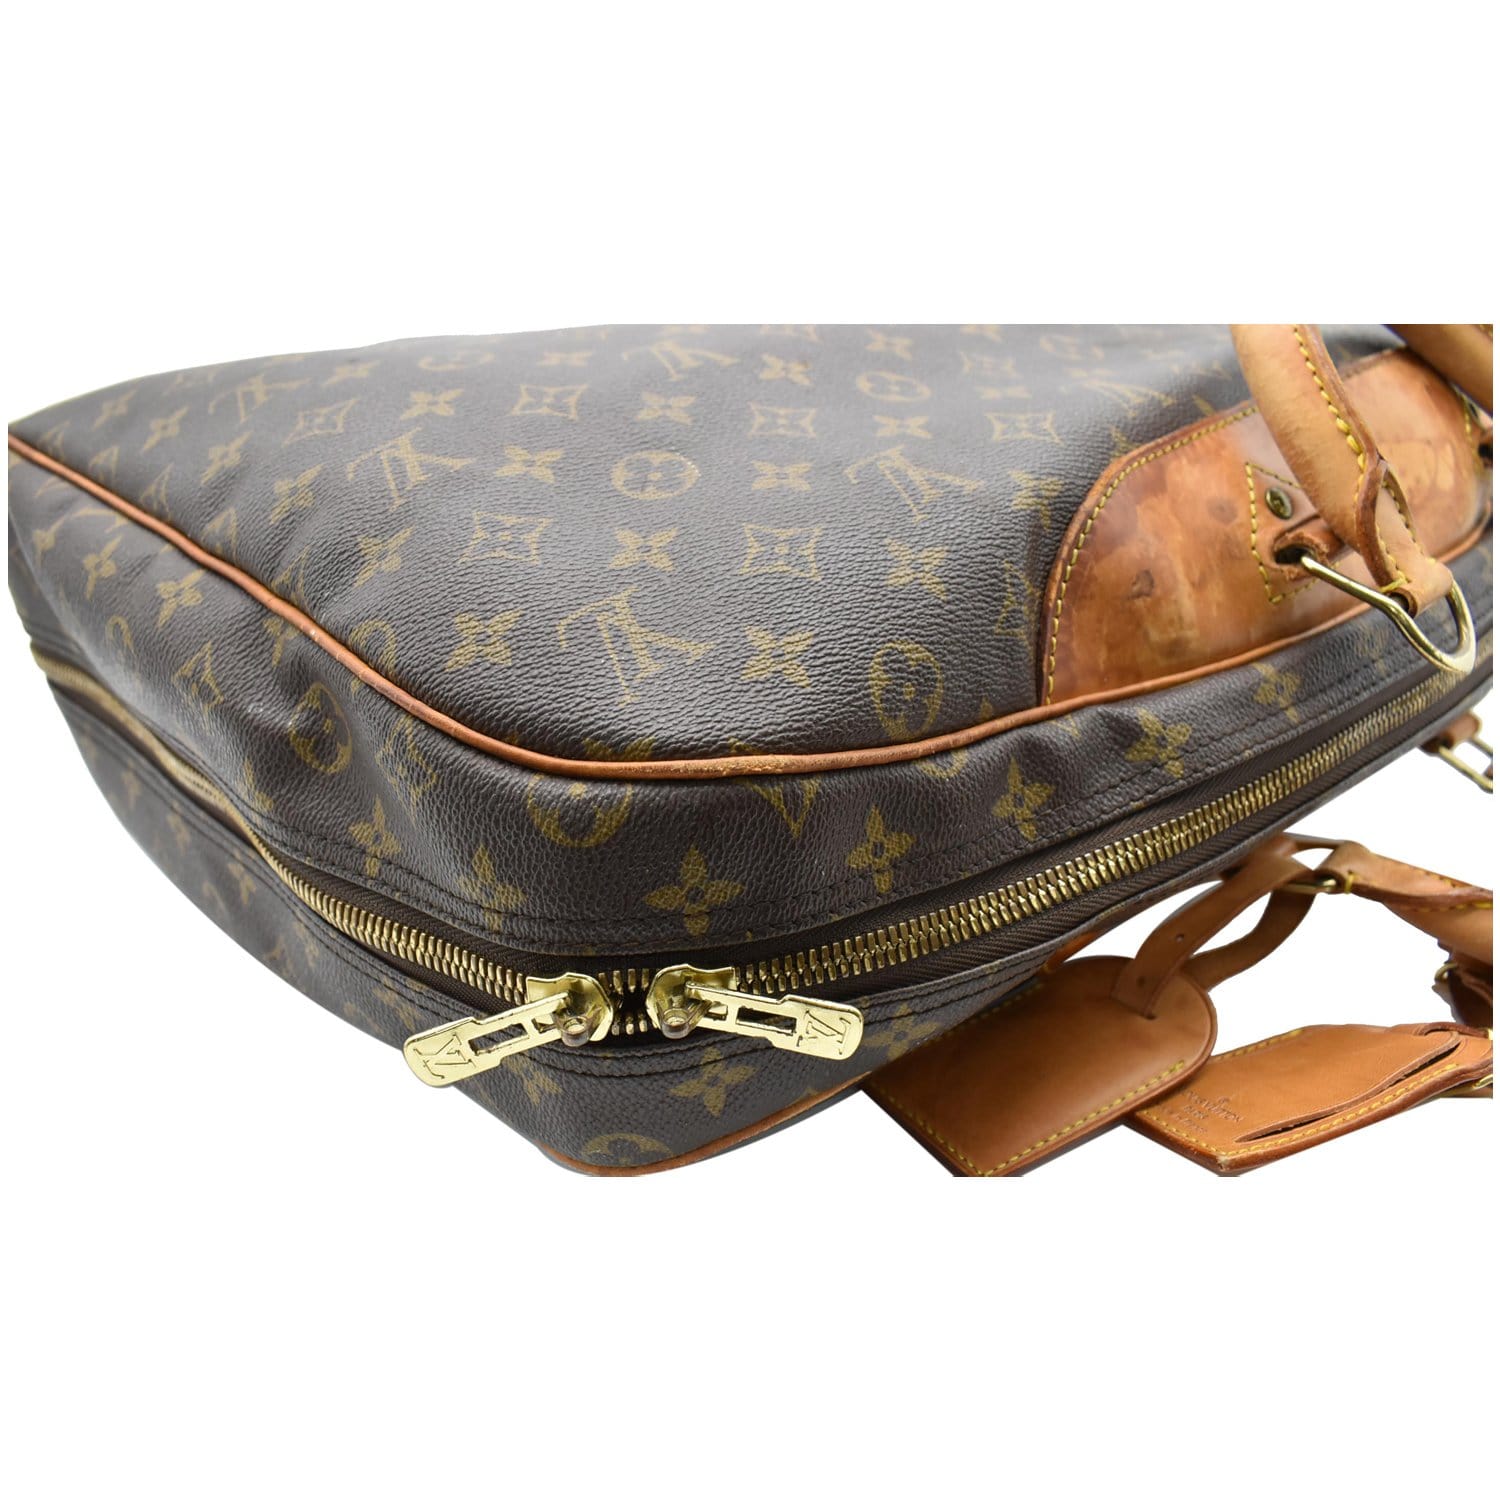 Louis Vuitton, Bags, Louis Vuitton Travel Bag Alize Poche Browns